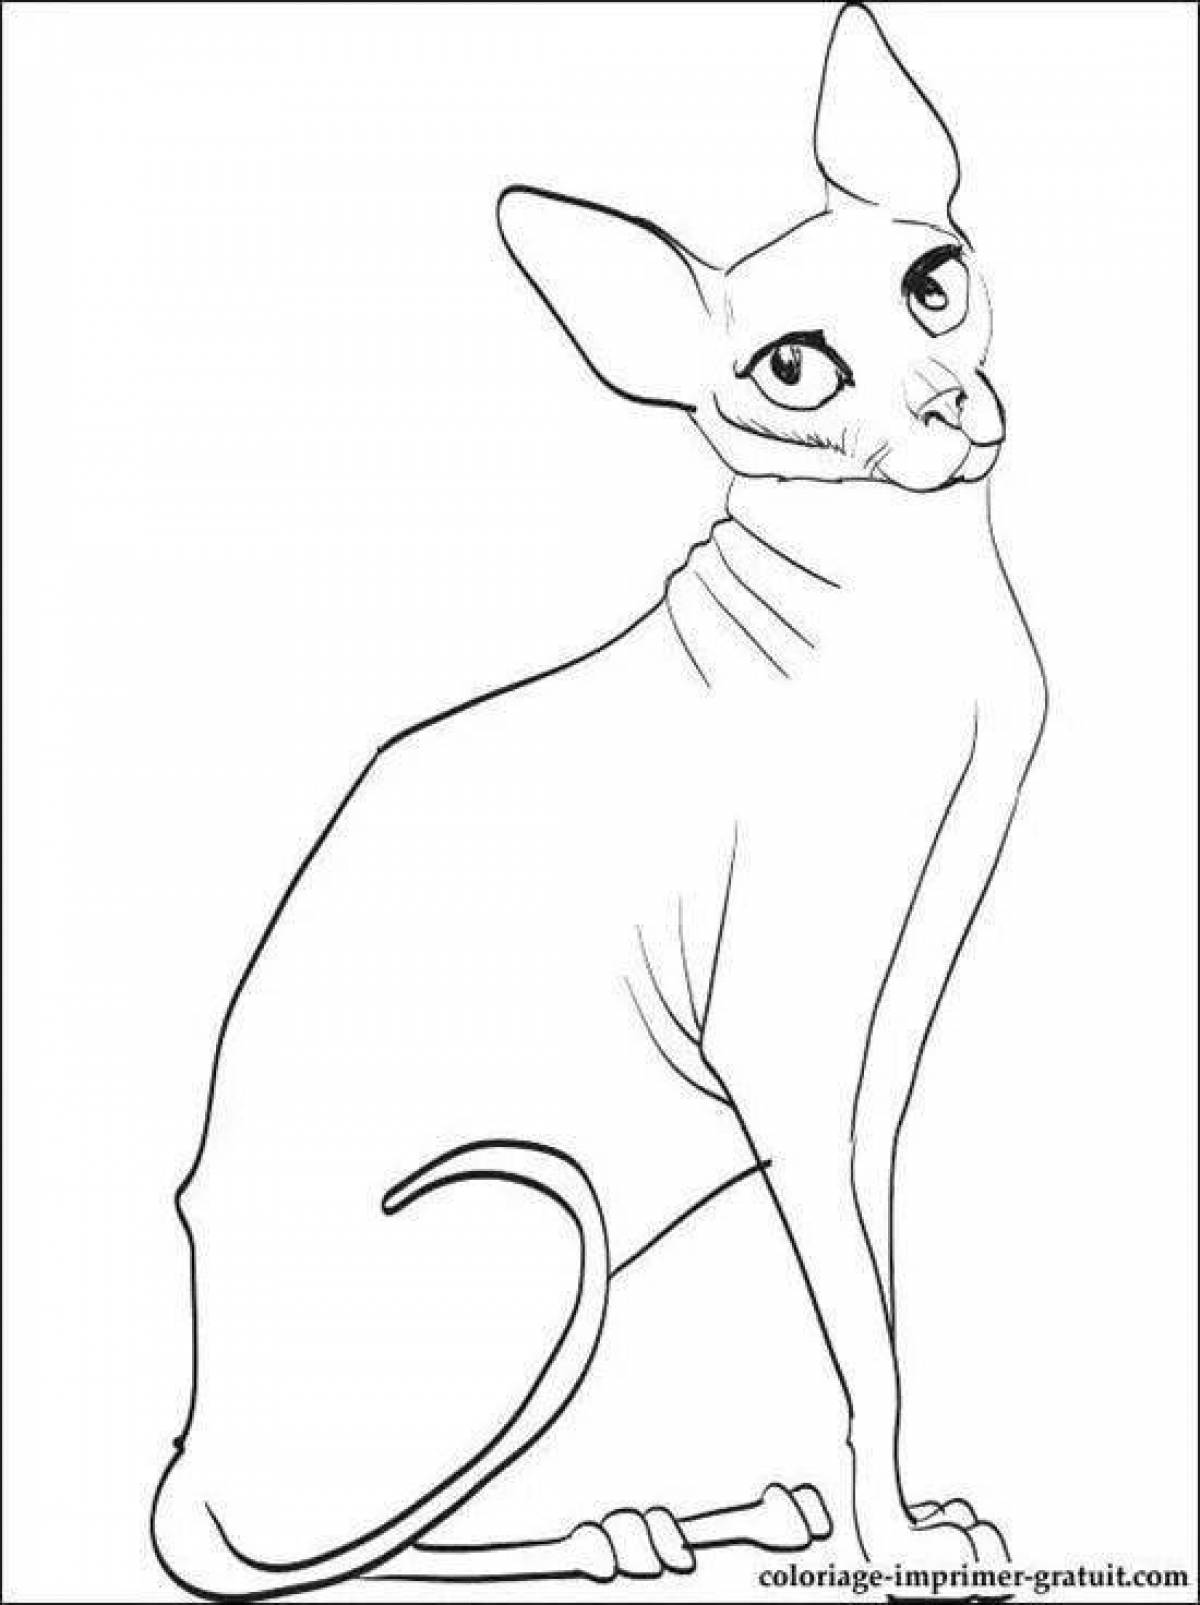 Раскраска элегантный кот-сфинкс